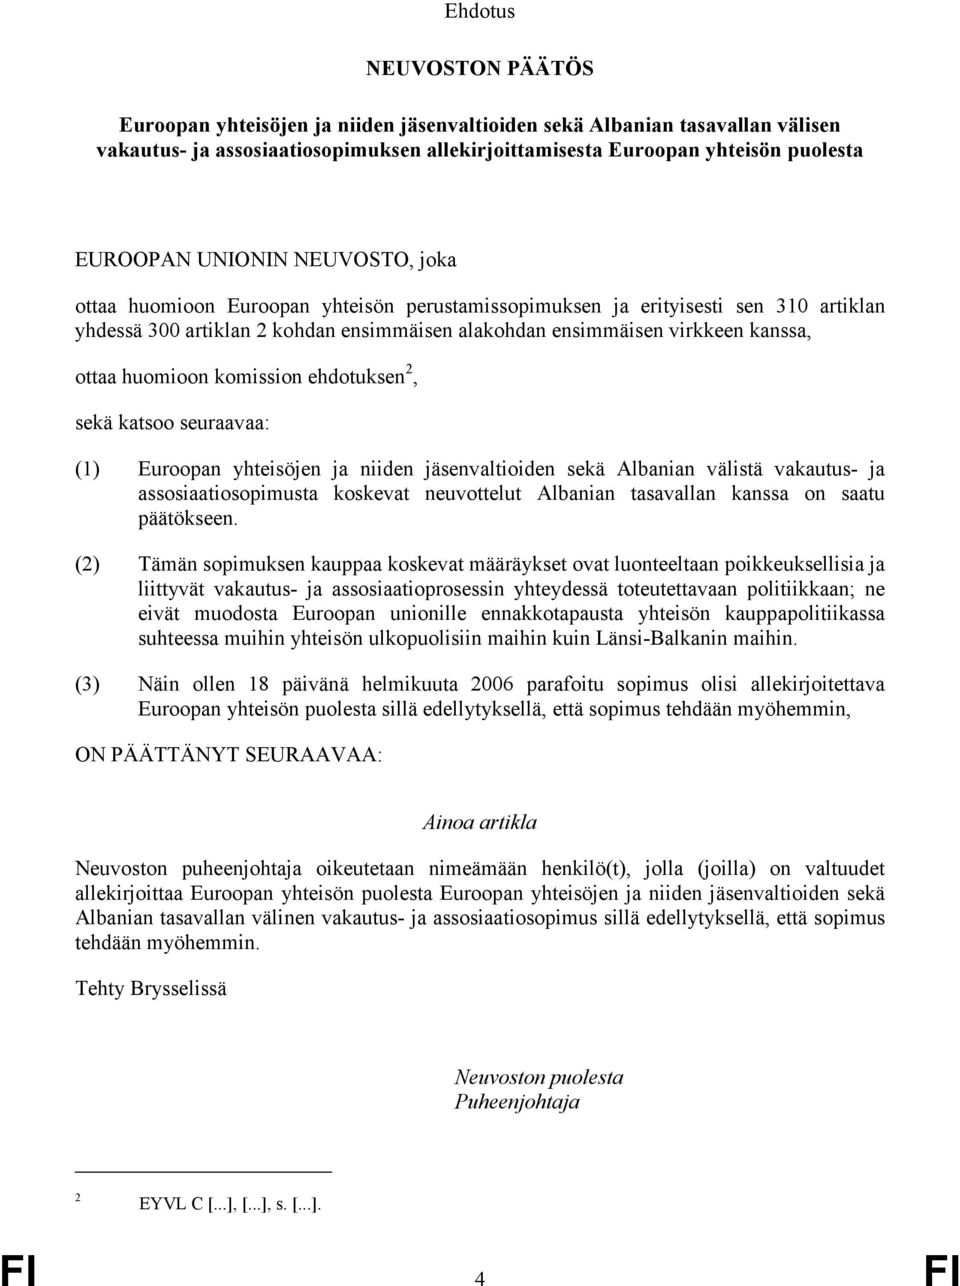 välistä vakautus0 ja assosiaatiosopimusta koskevat neuvottelut Albanian tasavallan kanssa on saatu päätökseen.